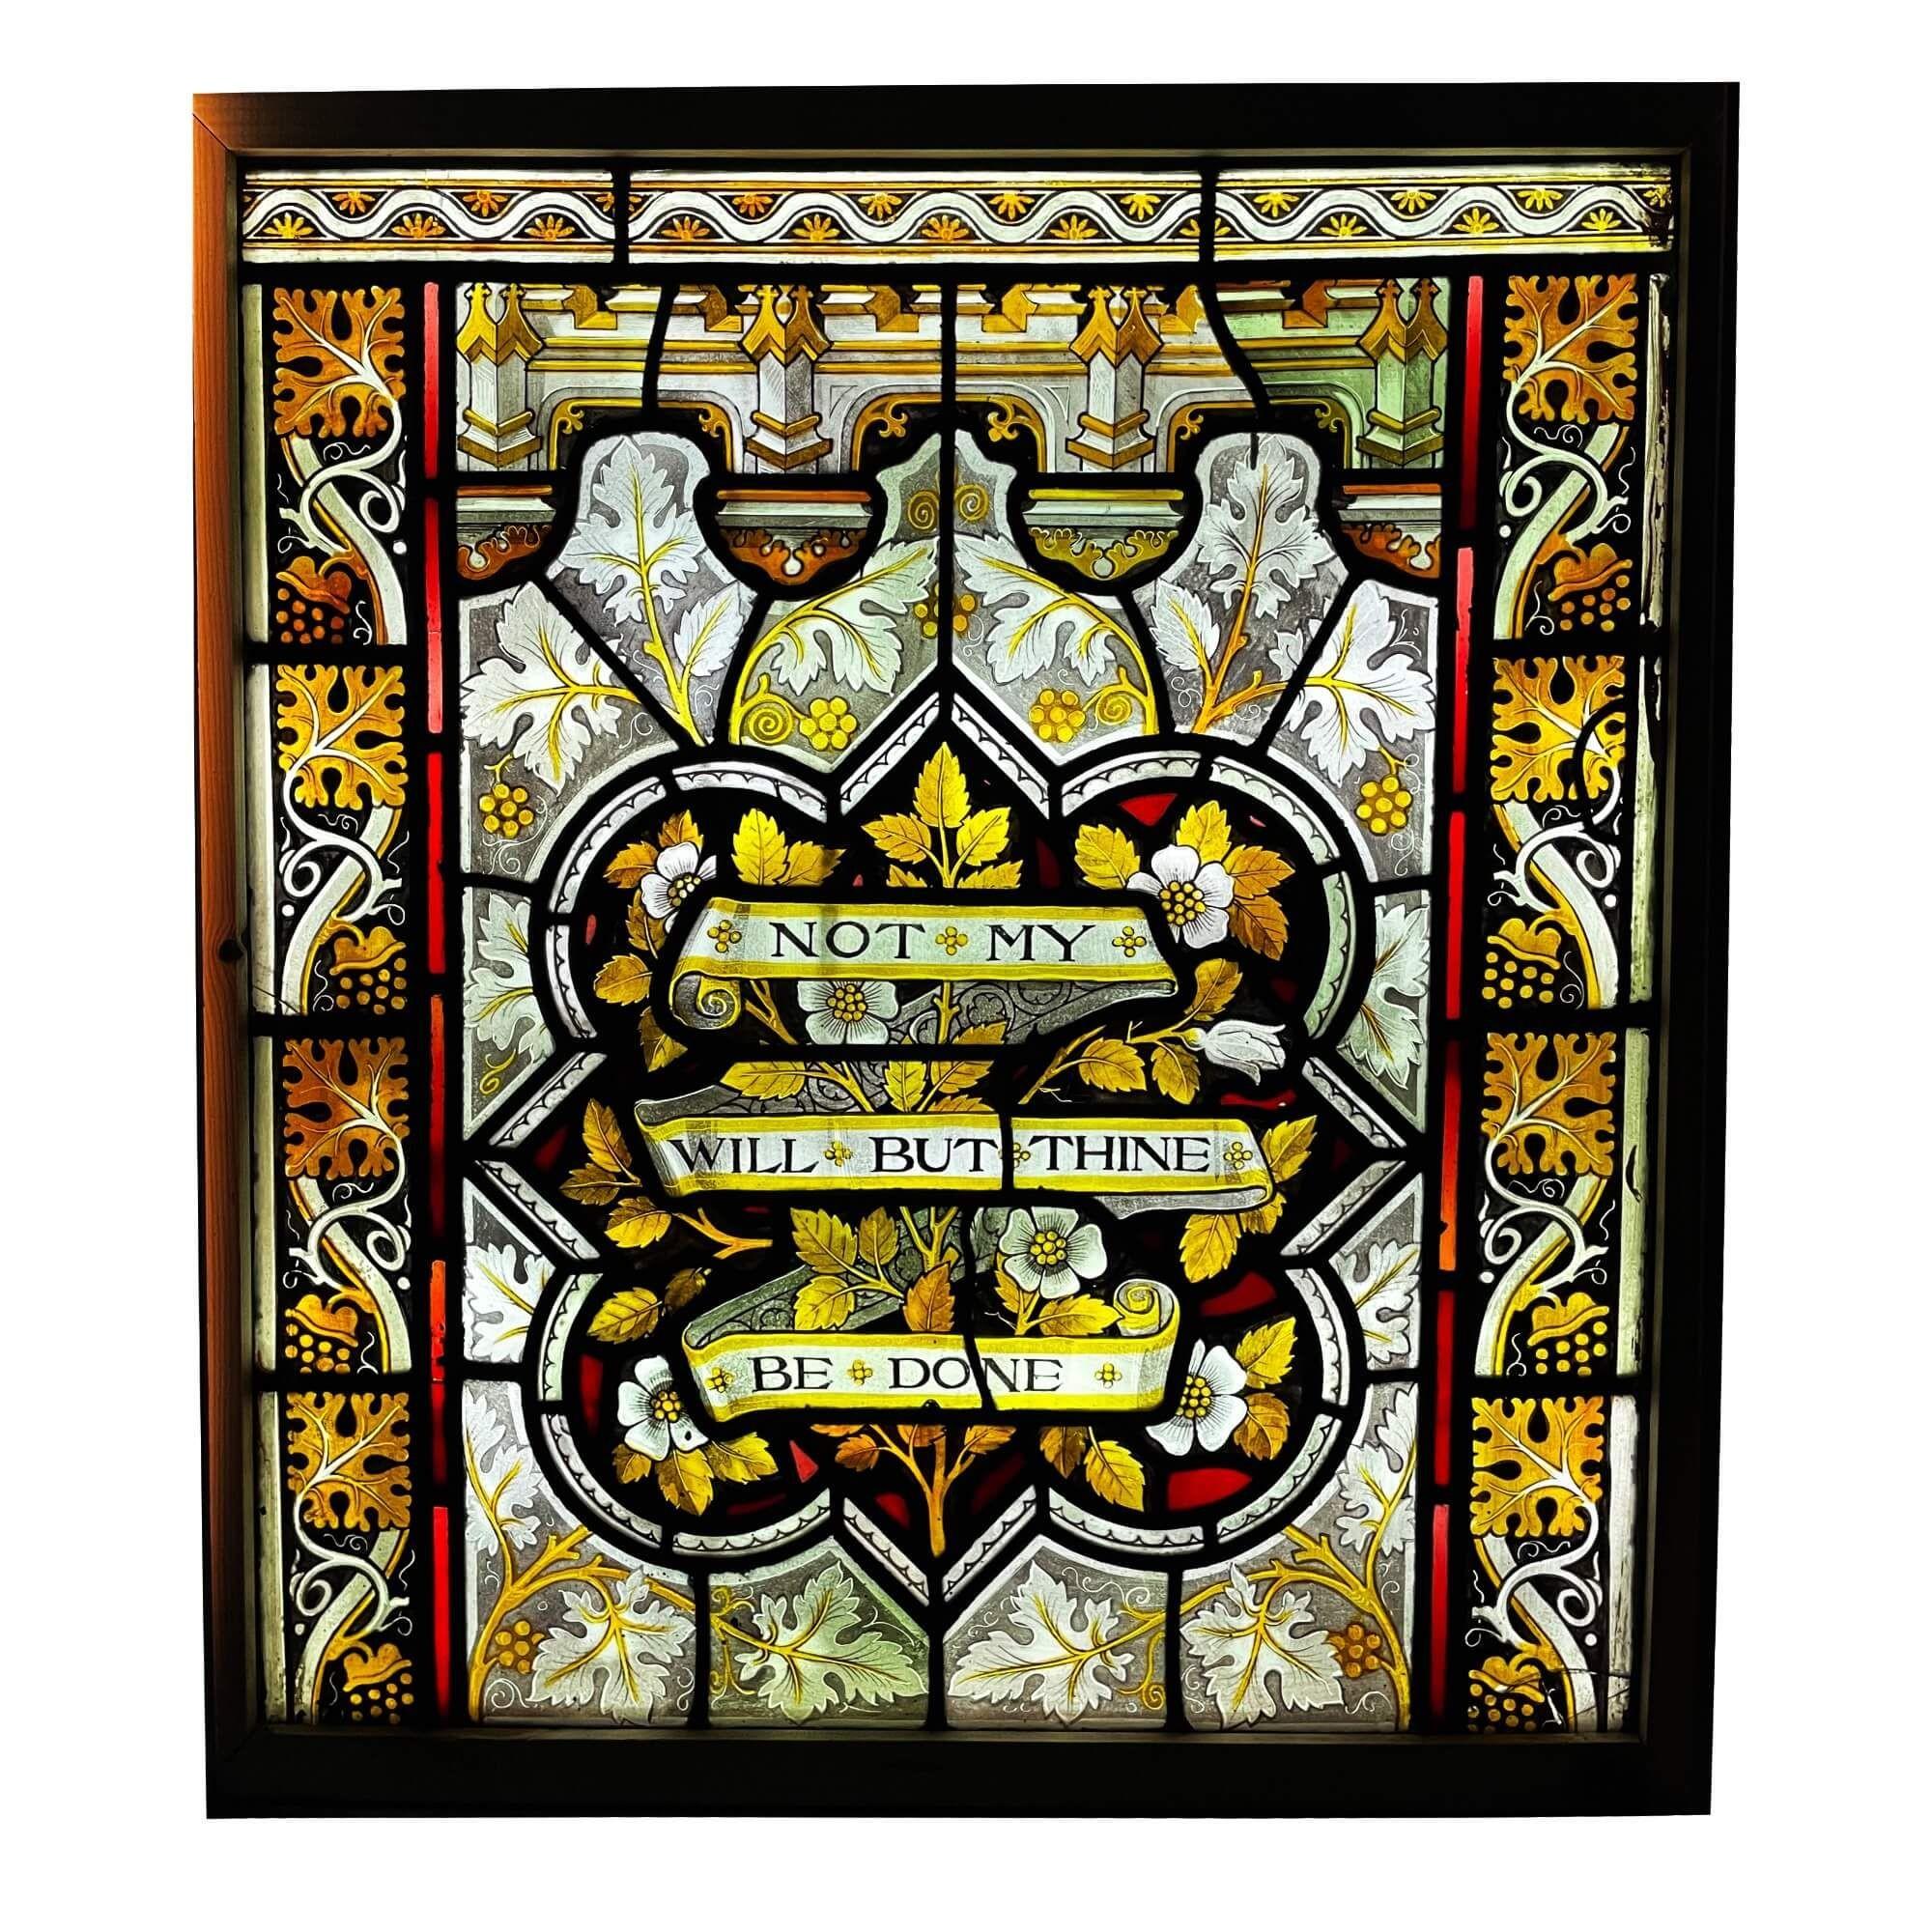 Ein antikes Glasfenster im kirchlichen Stil, gemalt mit dem religiösen Zitat 